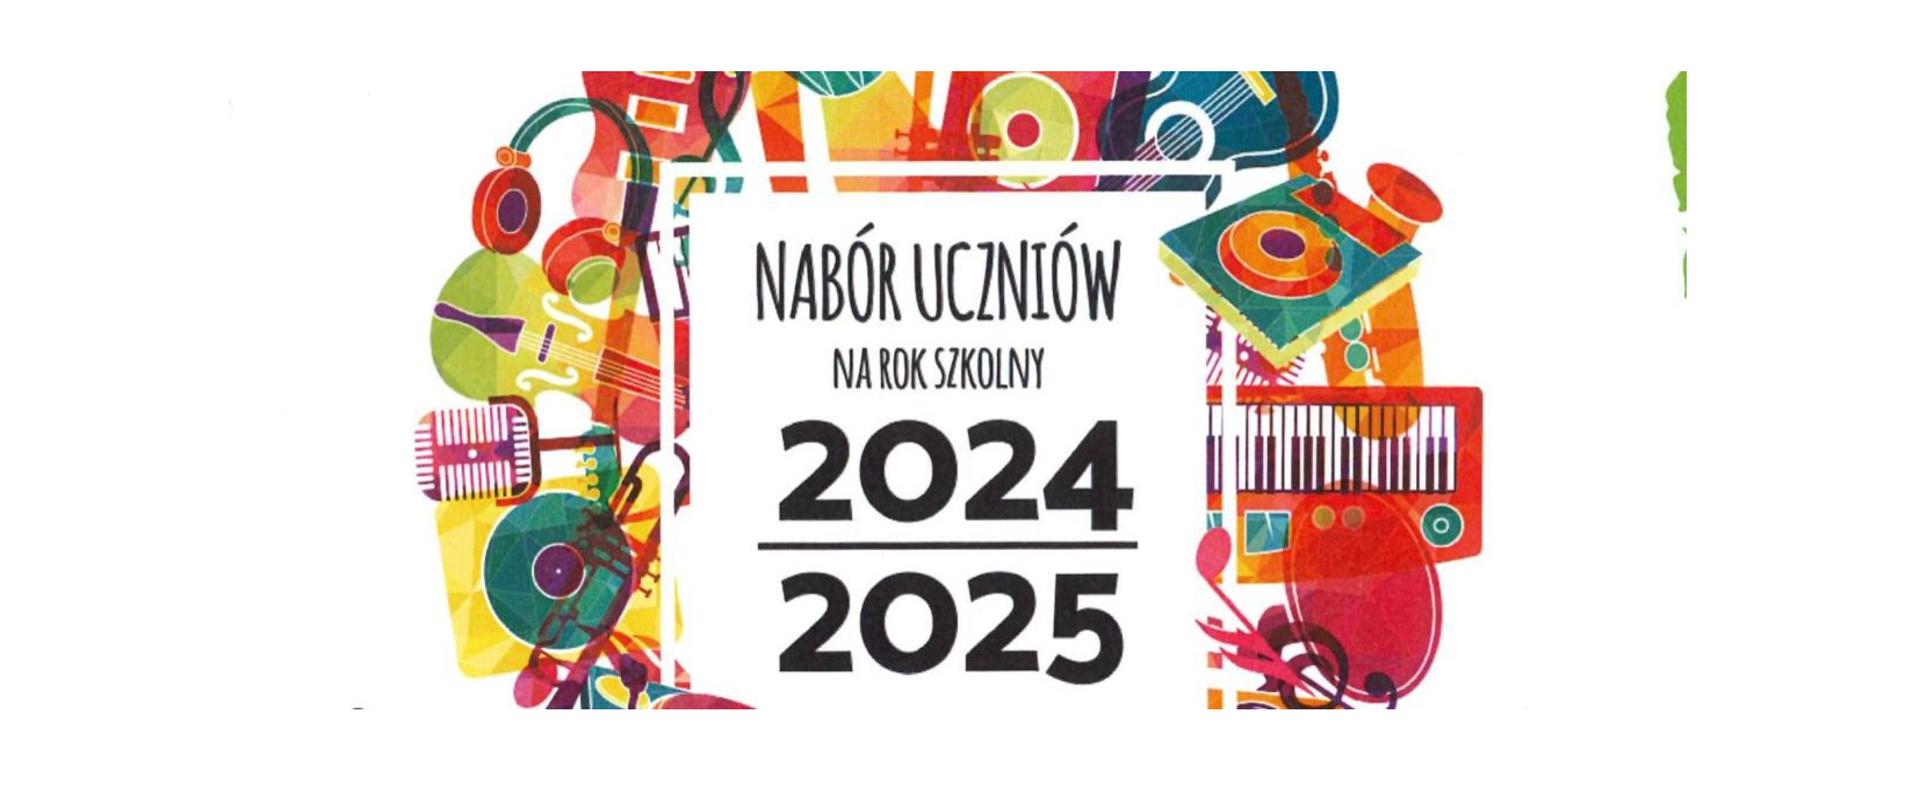 Plakat z rysunkowymi instrumentami i informacją o naborze uczniów na rok szkolny 2024/2025